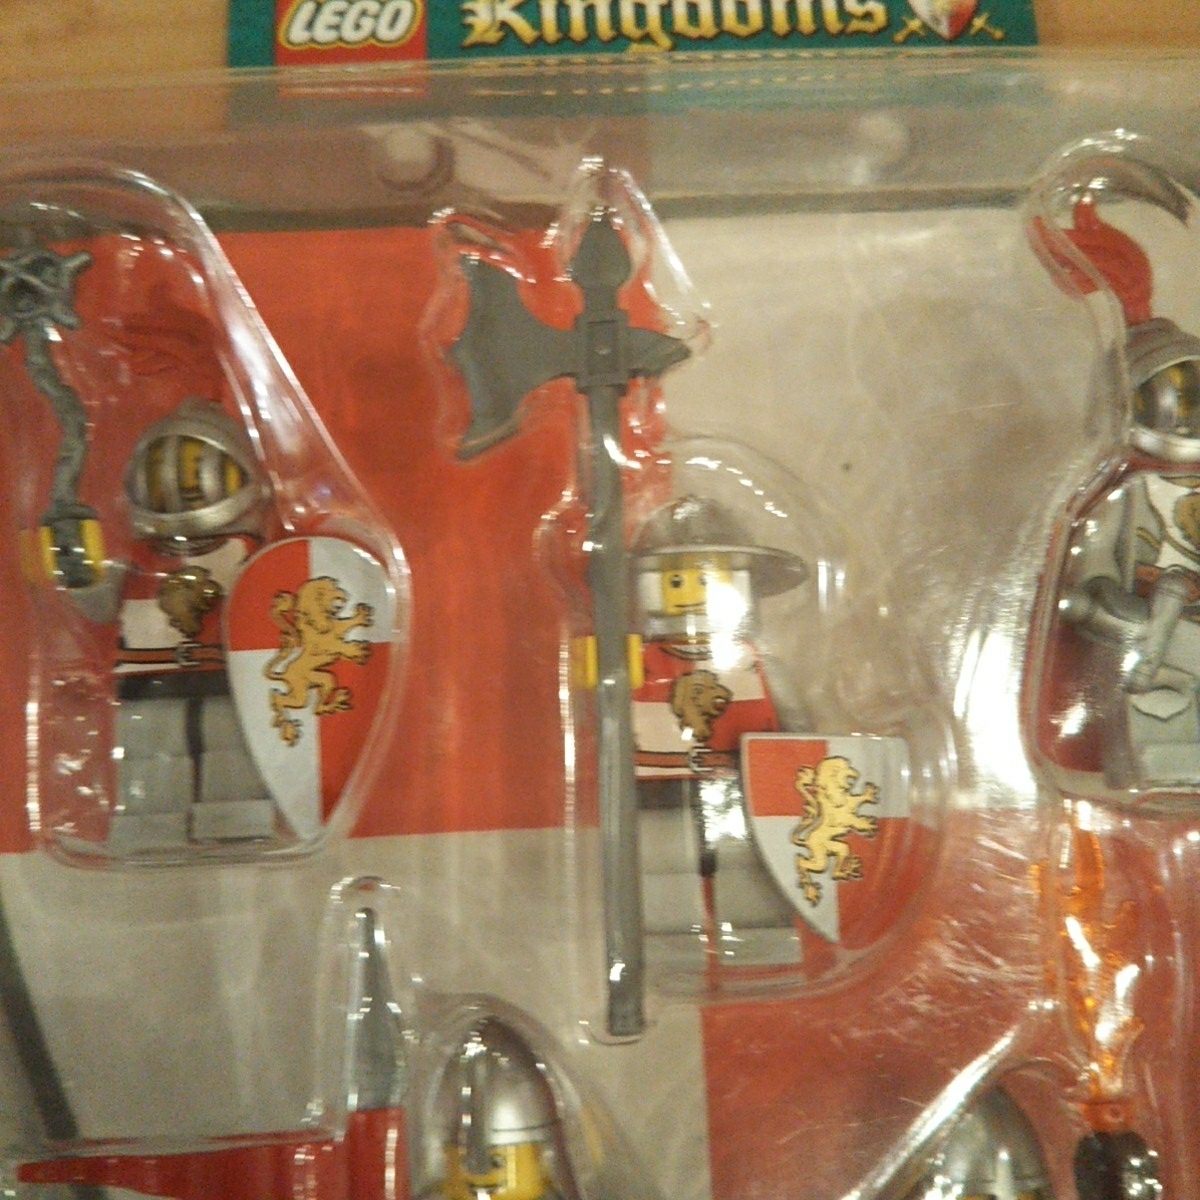 新品未開品 激レア廃盤品 コレクターアイテム LEGO レゴ キングダム ナイト バトルパック 852921 Kingdoms Knights Battle Pack _画像2